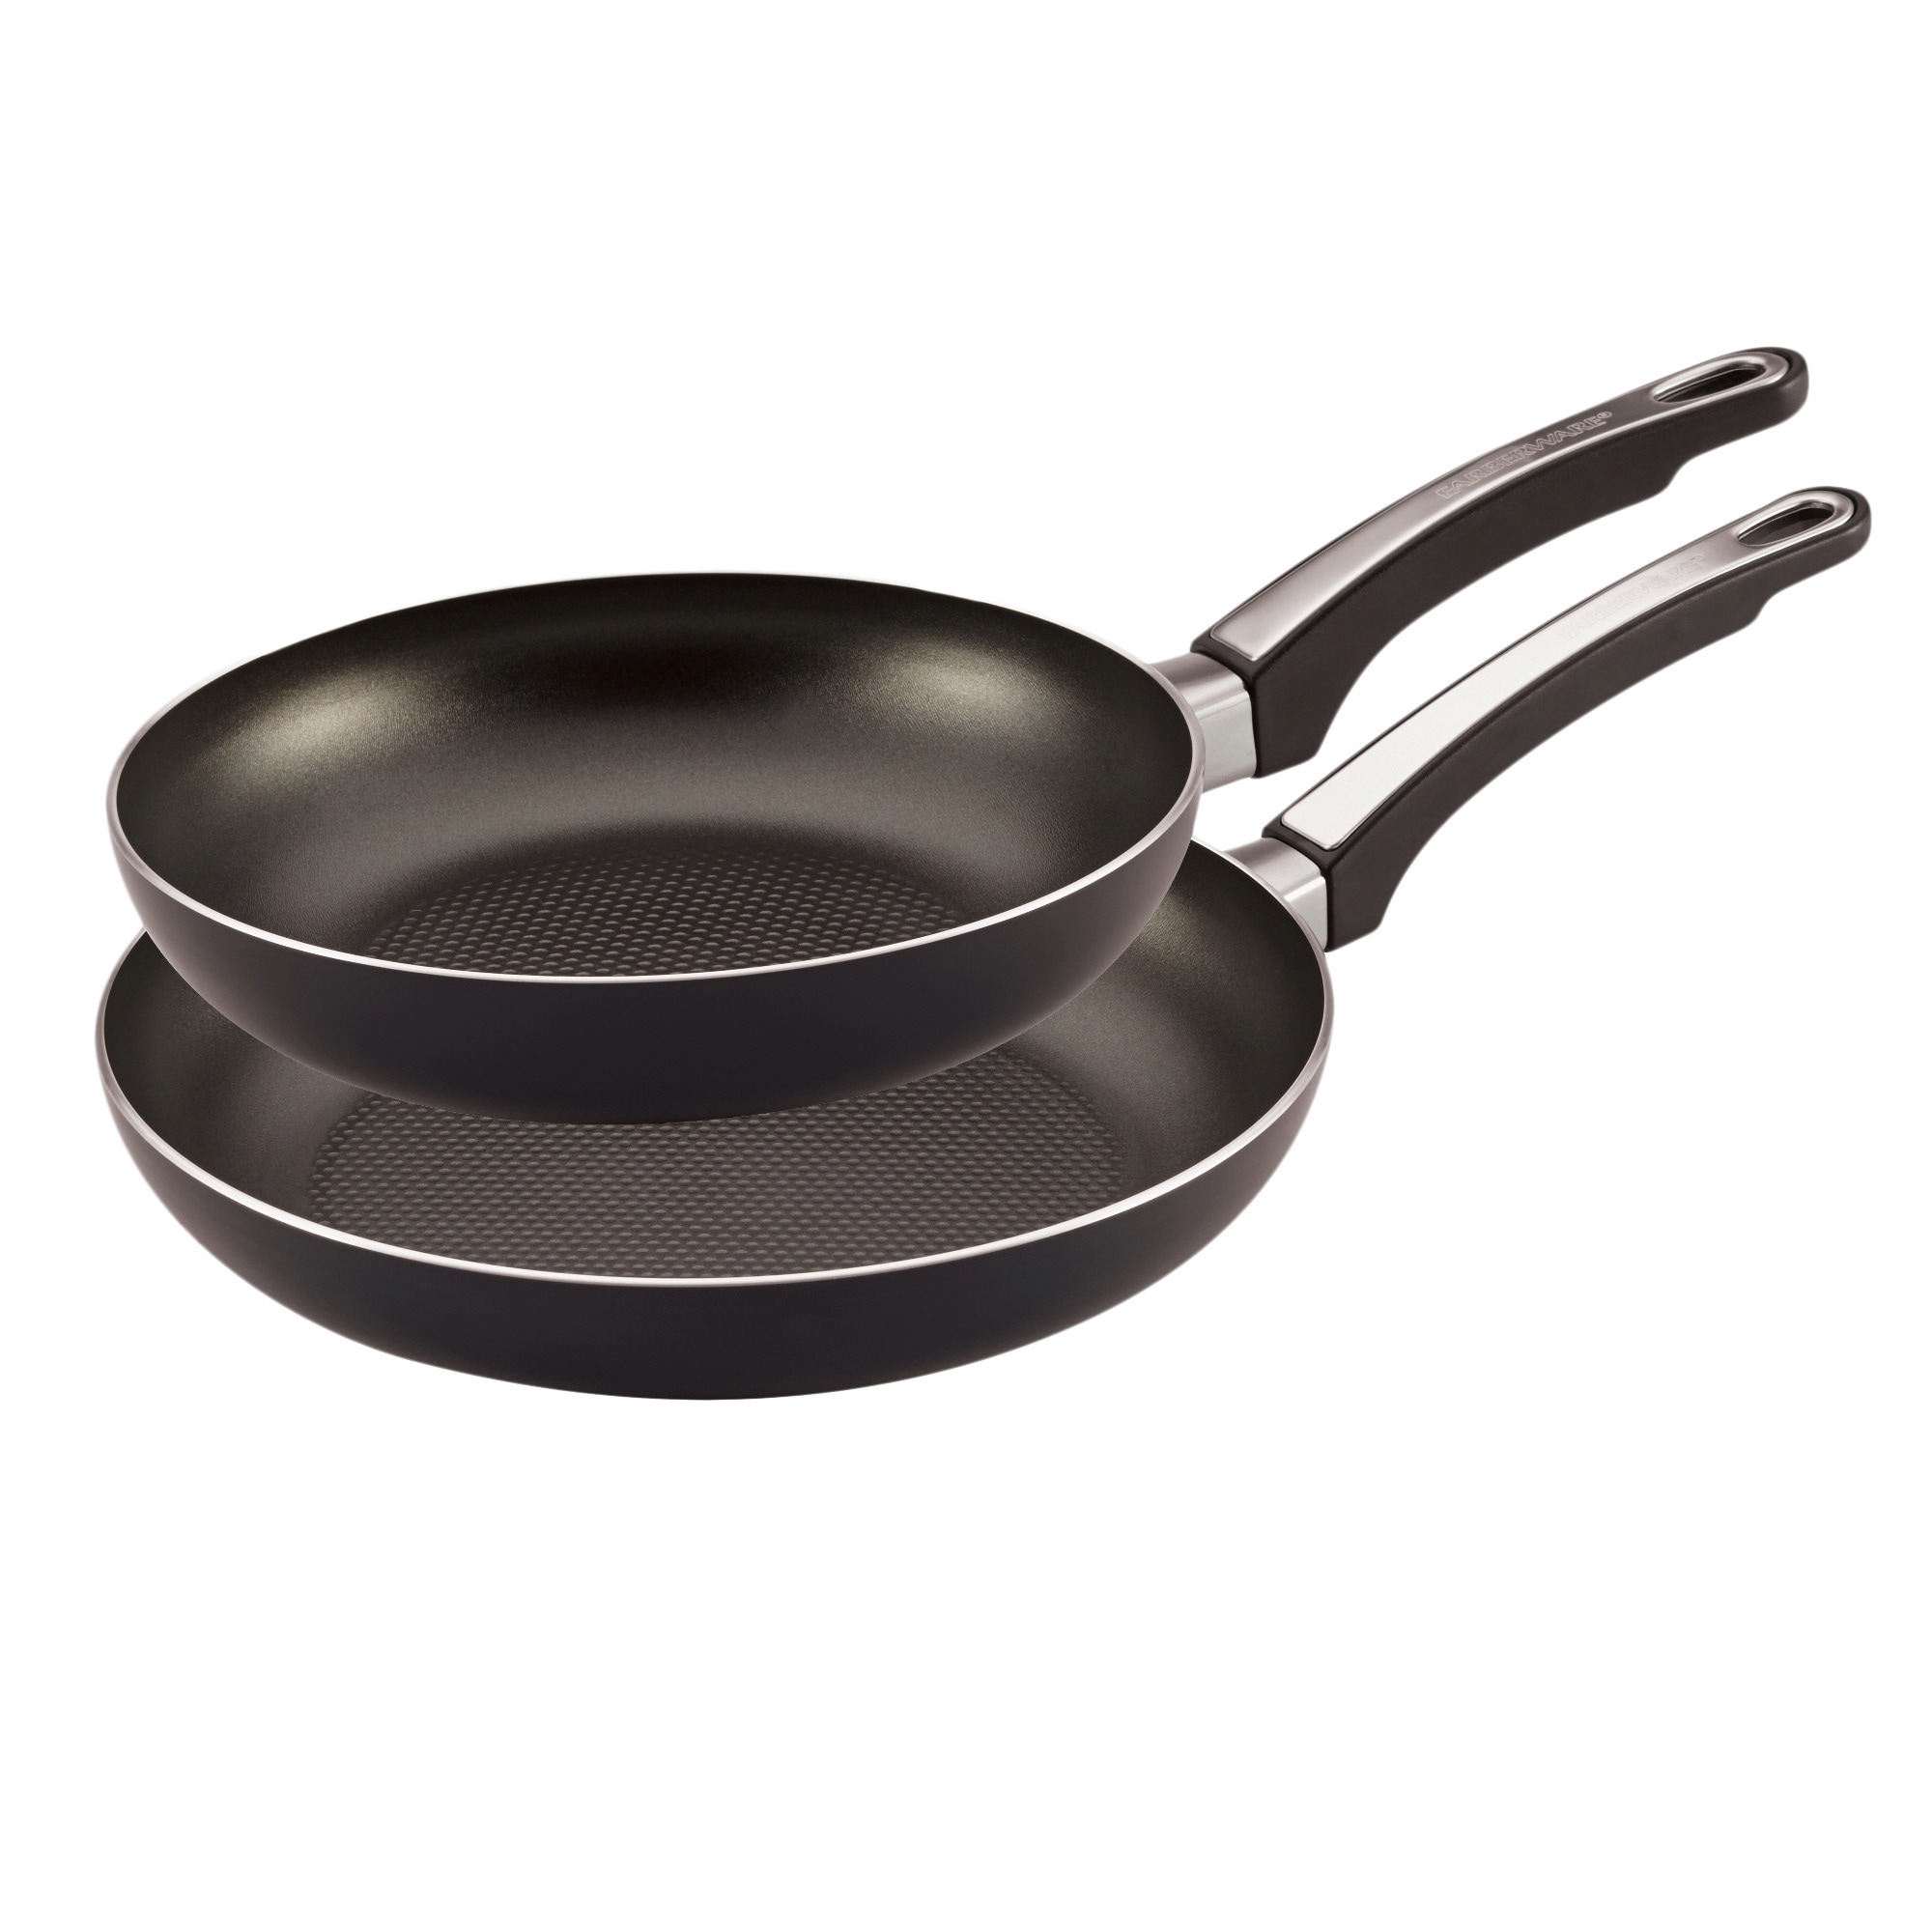 Farberwar 8-inch Aluminum Non-Stick Frying Pan/Fry Pan/Skillet,Black